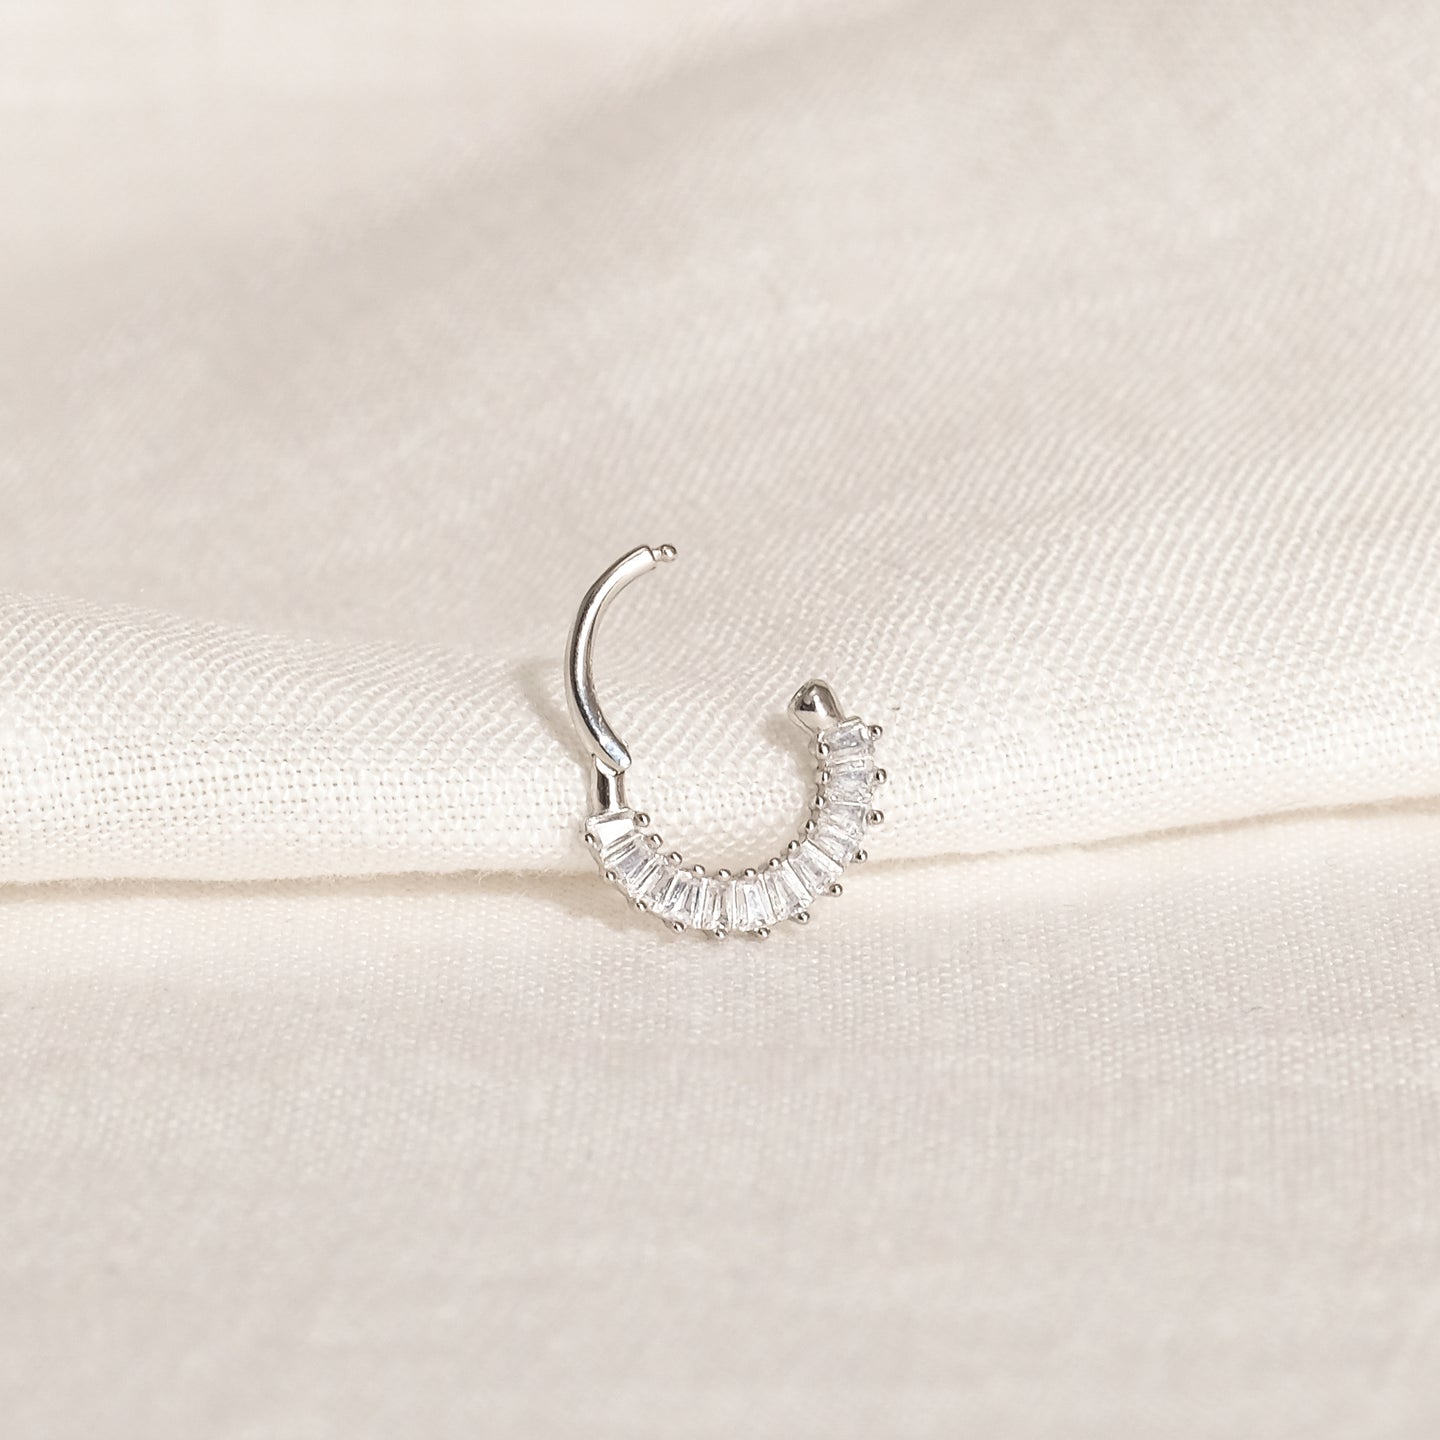 products/zini-cz-piercing-earrings-925-sterling-silver-2.jpg